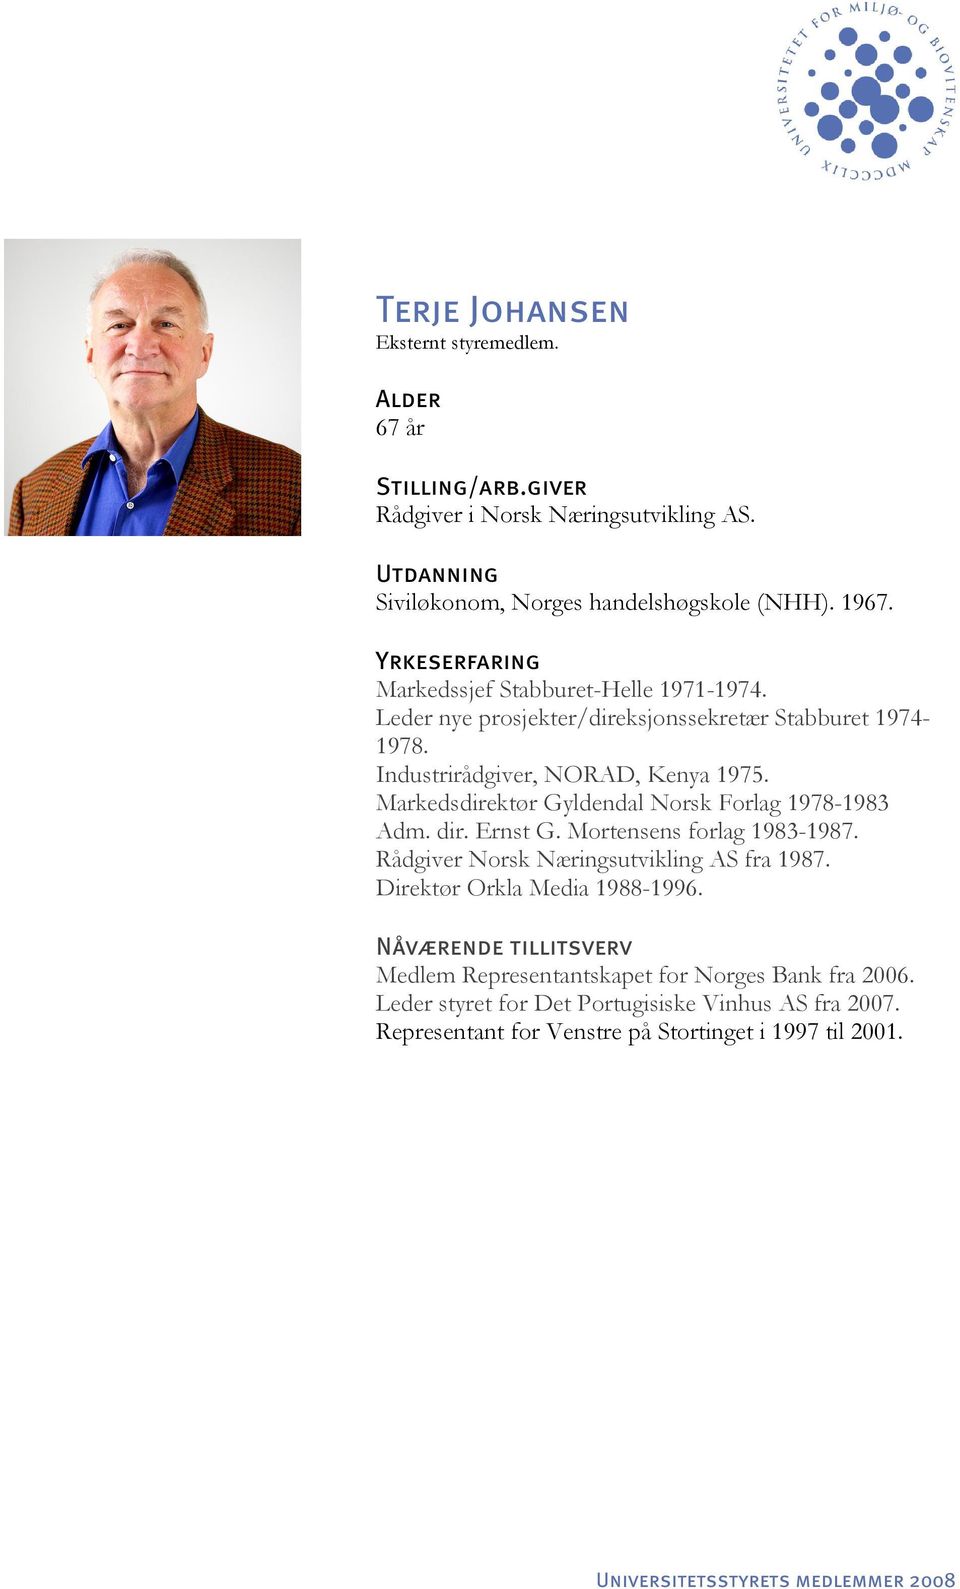 Markedsdirektør Gyldendal Norsk Forlag 1978-1983 Adm. dir. Ernst G. Mortensens forlag 1983-1987. Rådgiver Norsk Næringsutvikling AS fra 1987.